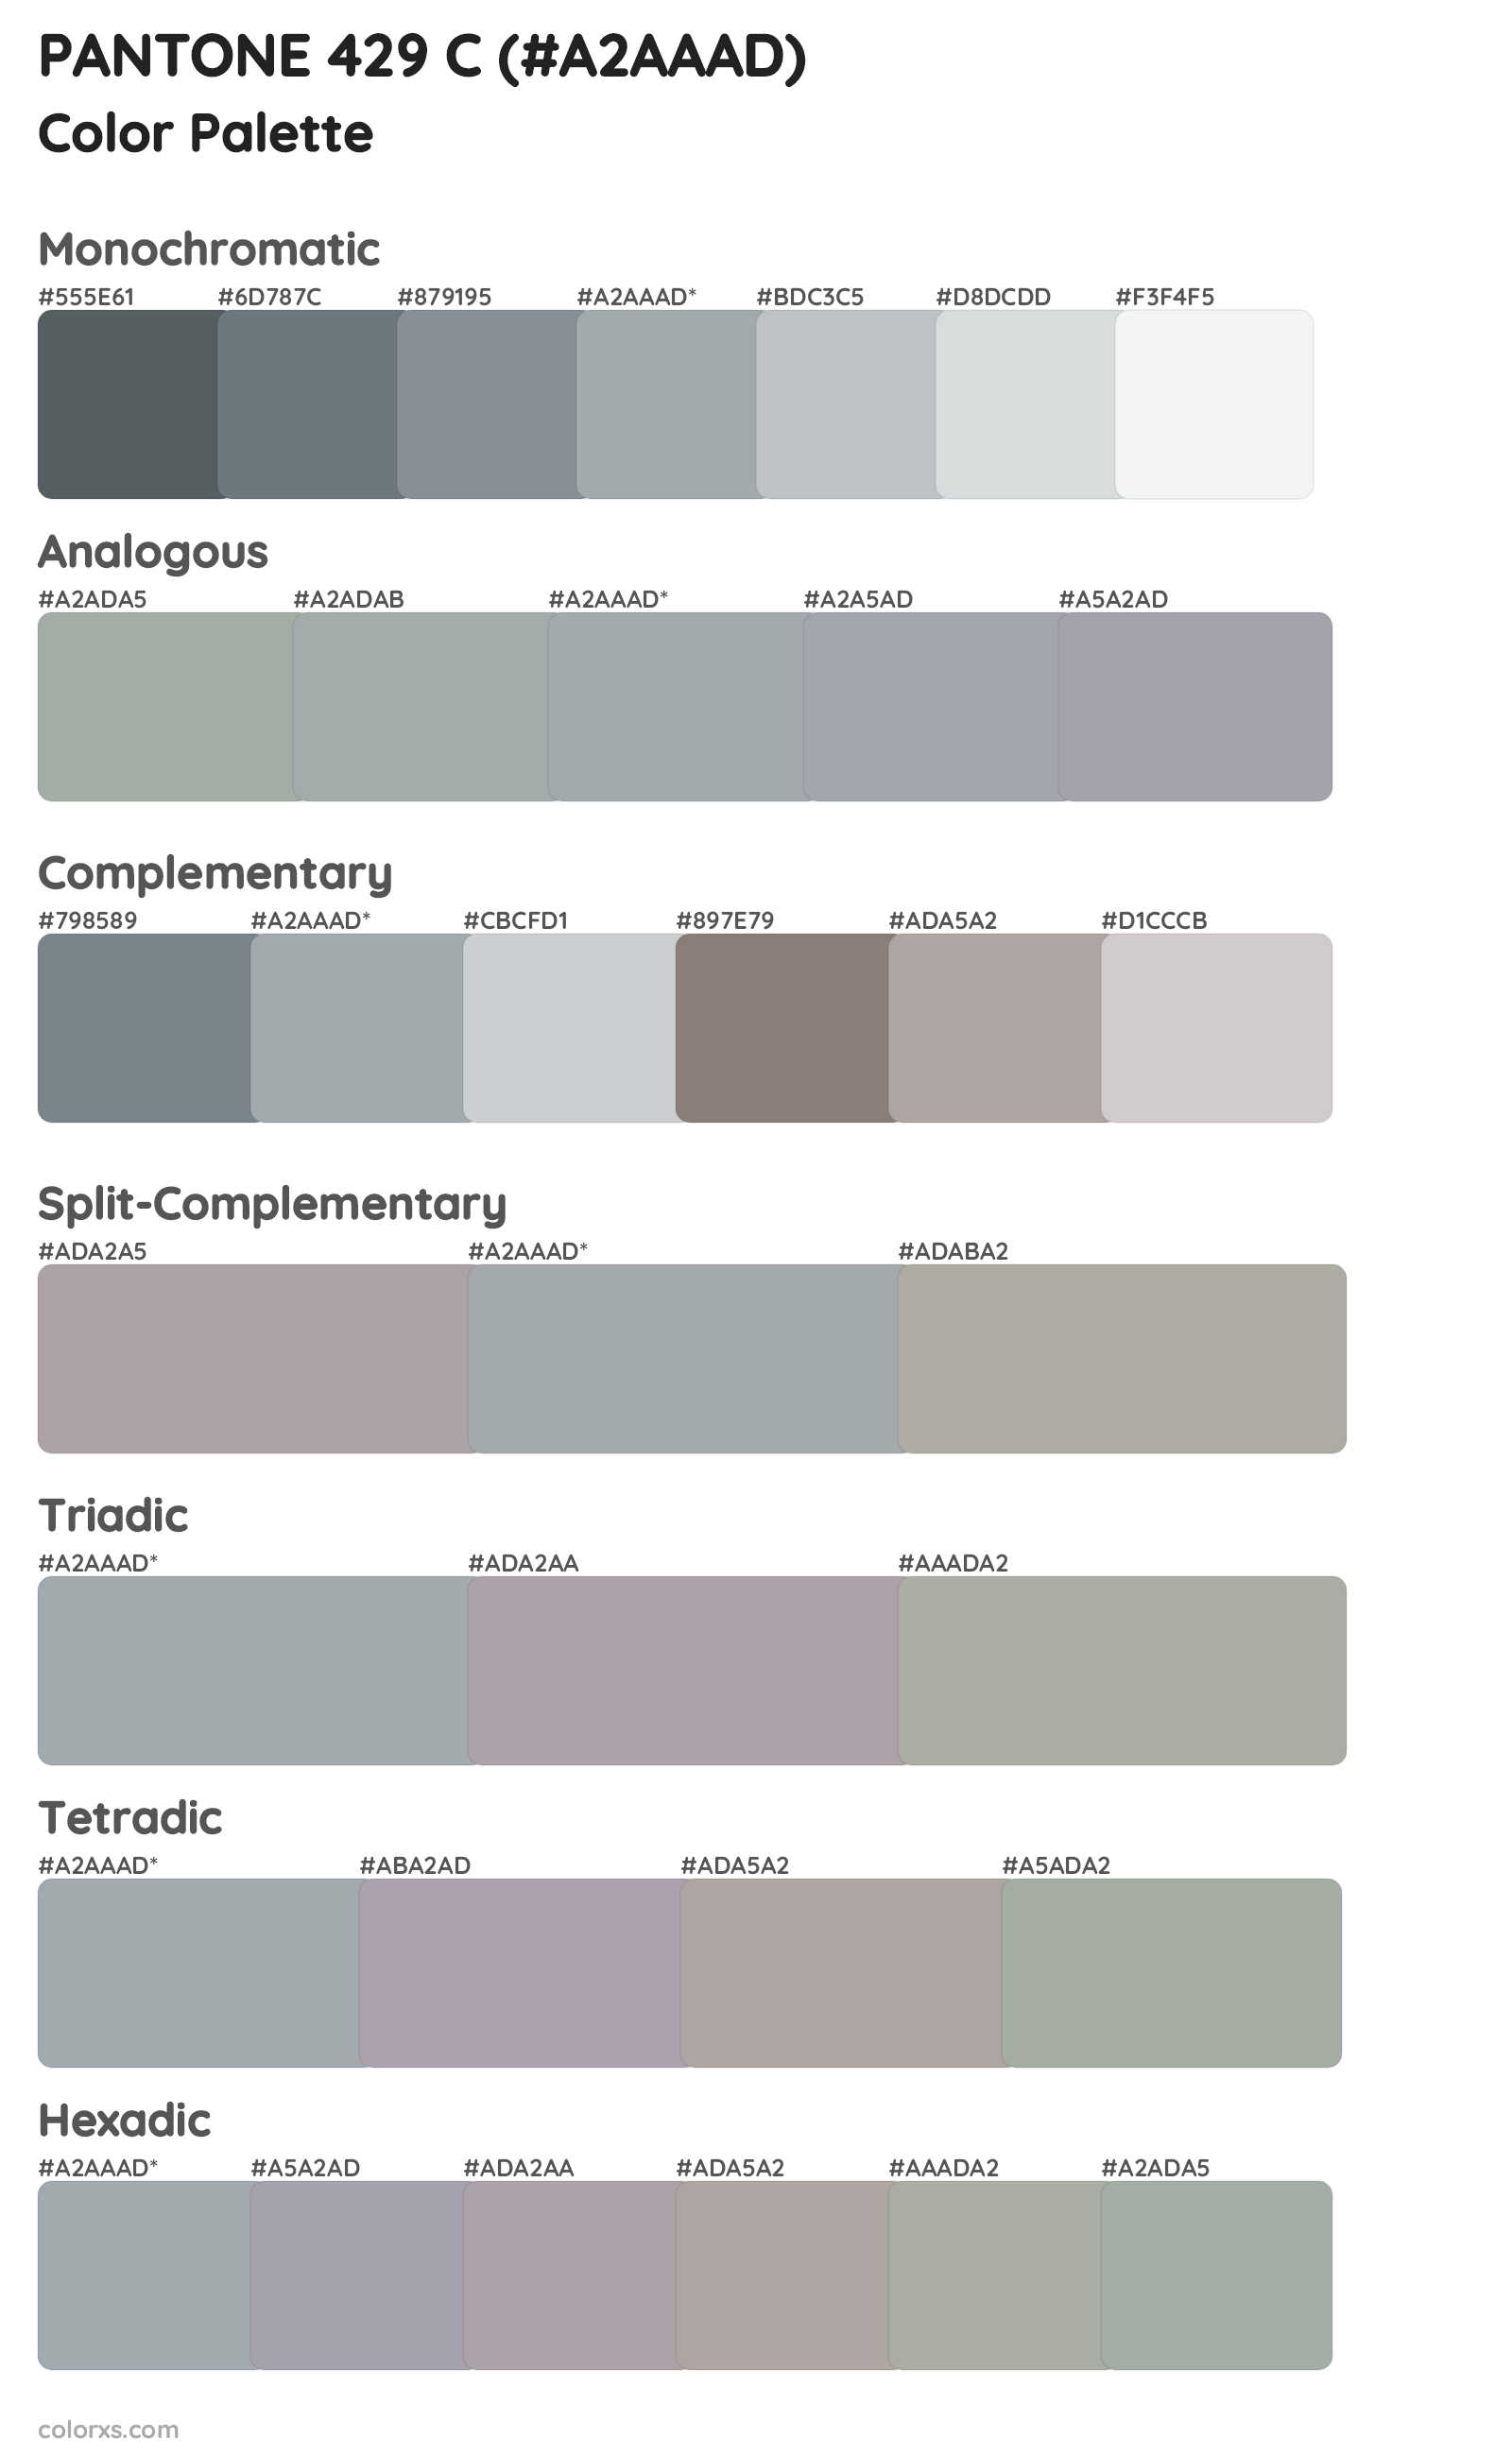 PANTONE 429 C Color Scheme Palettes